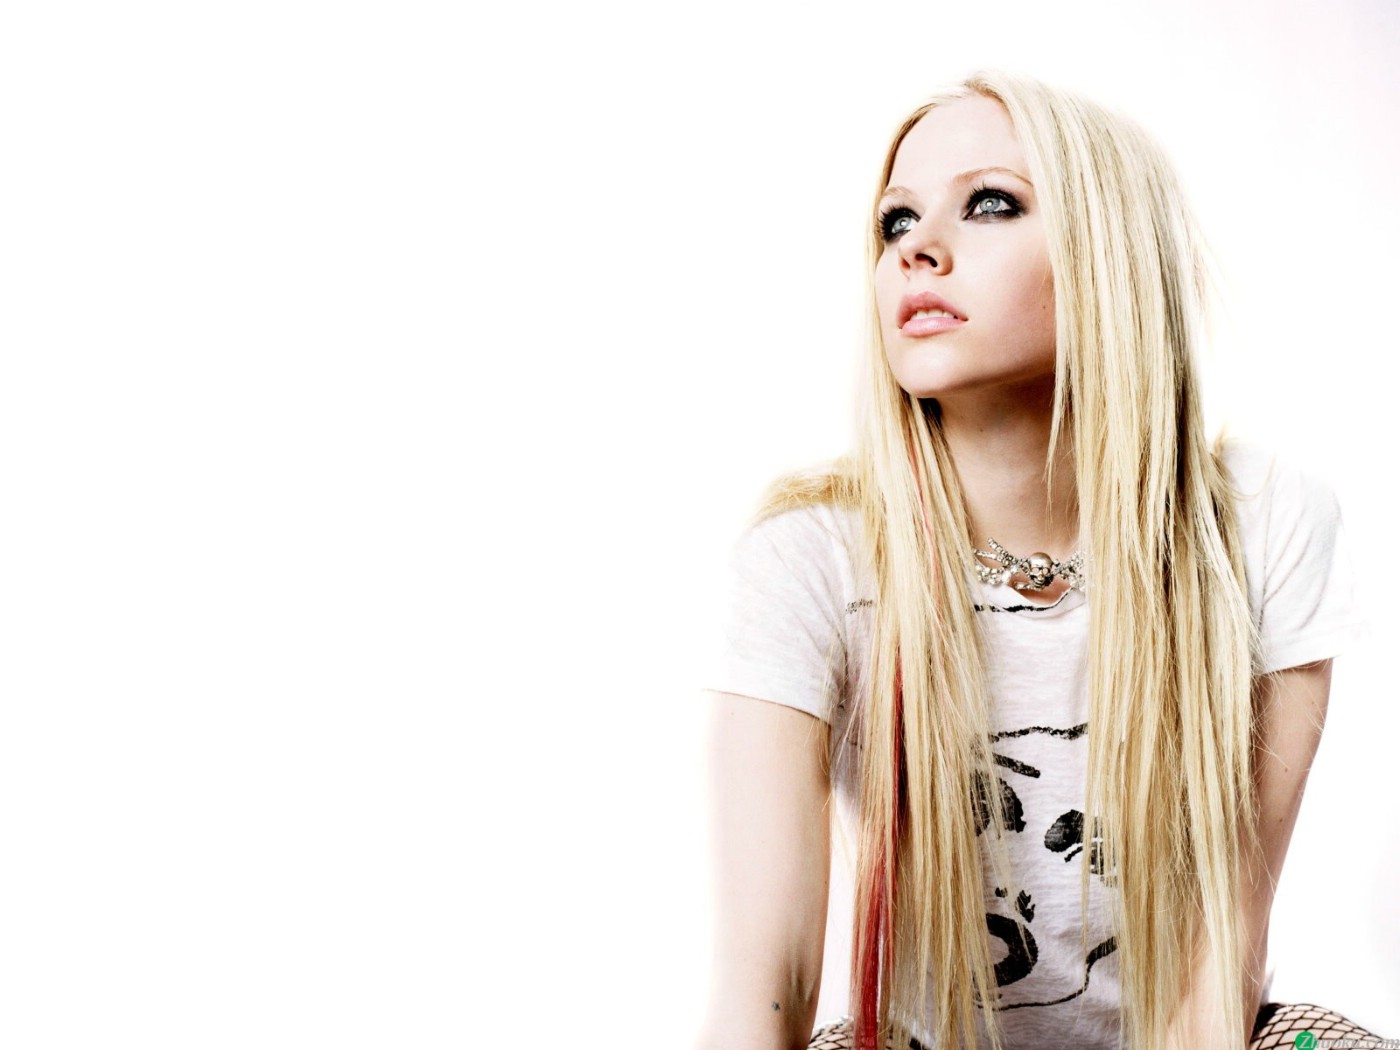 壁纸1400x1050艾薇儿 Avril Lavigne 壁纸76壁纸 艾薇儿 Avril Lavigne壁纸 艾薇儿 Avril Lavigne图片 艾薇儿 Avril Lavigne素材 明星壁纸 明星图库 明星图片素材桌面壁纸